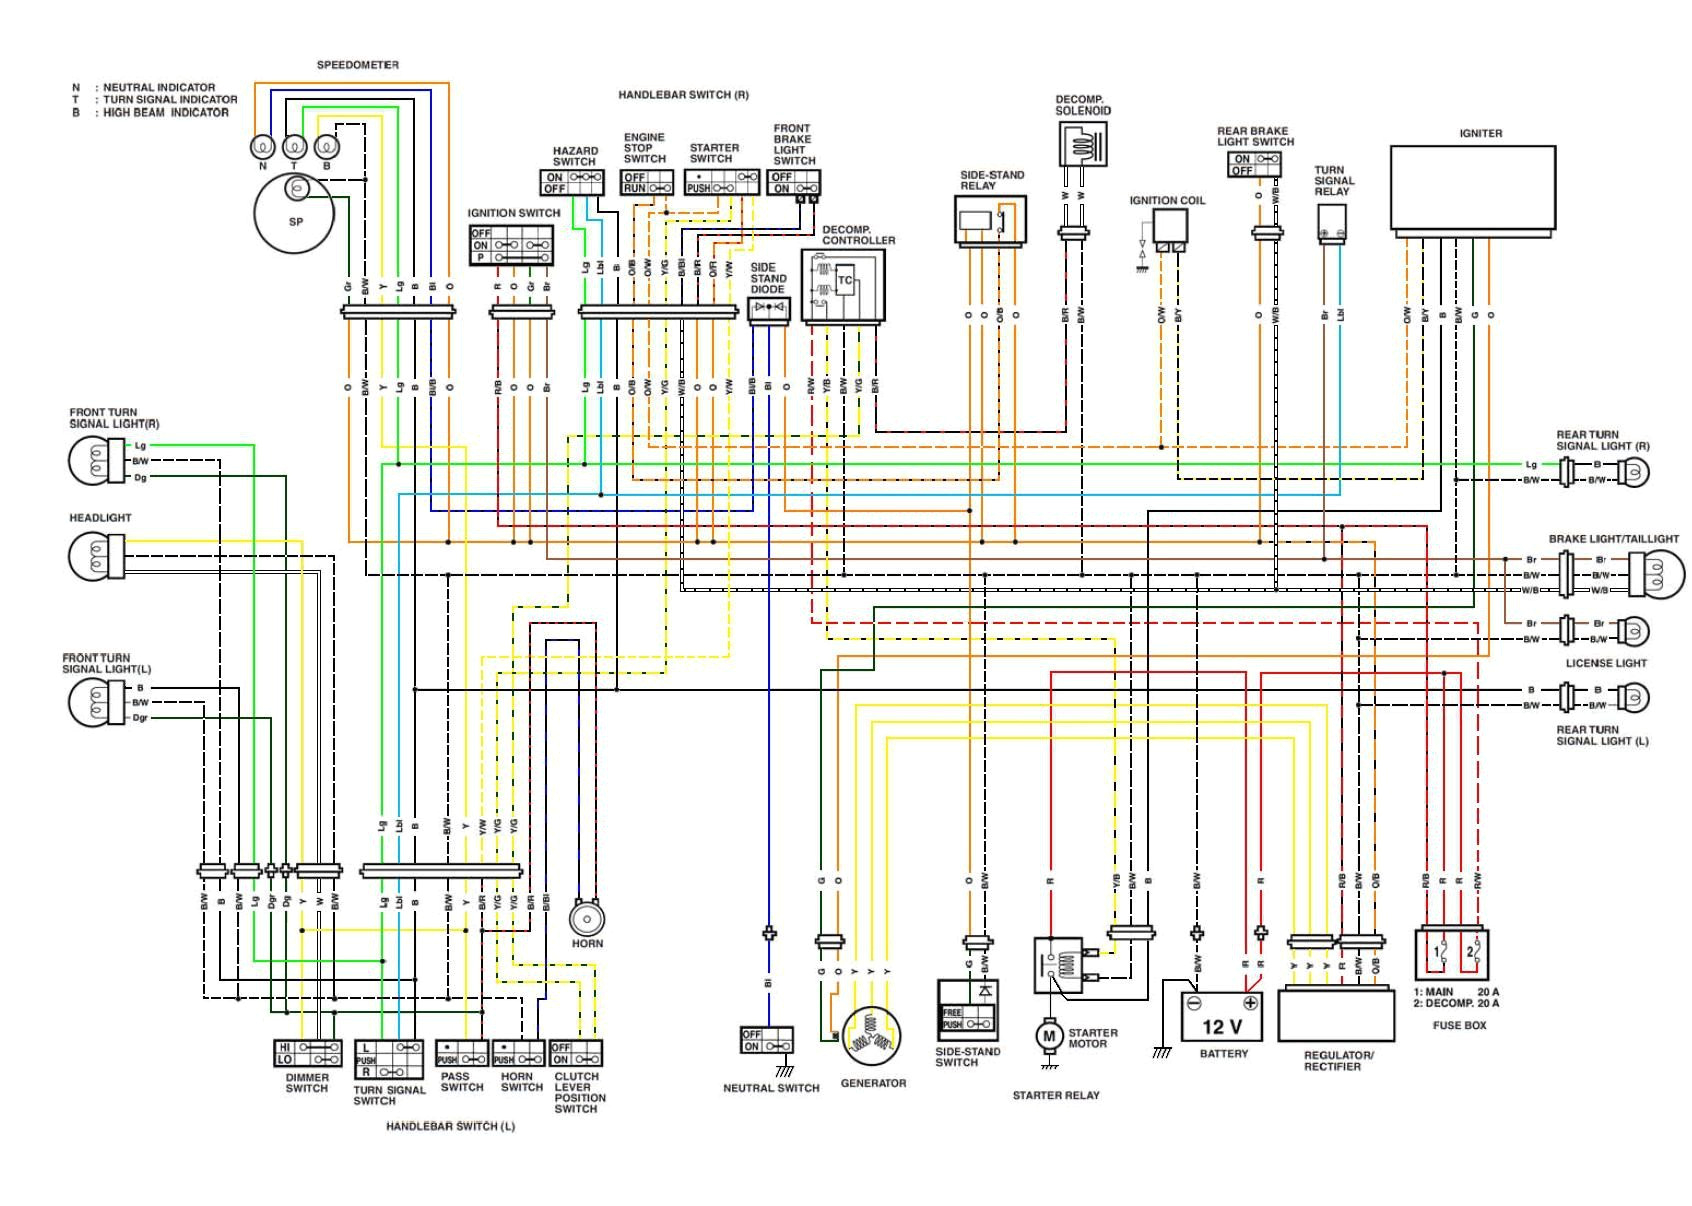 96 harley sportster wiring diagram wiring diagrams konsult96 sportster wiring diagram wiring diagram toolbox 1996 harley